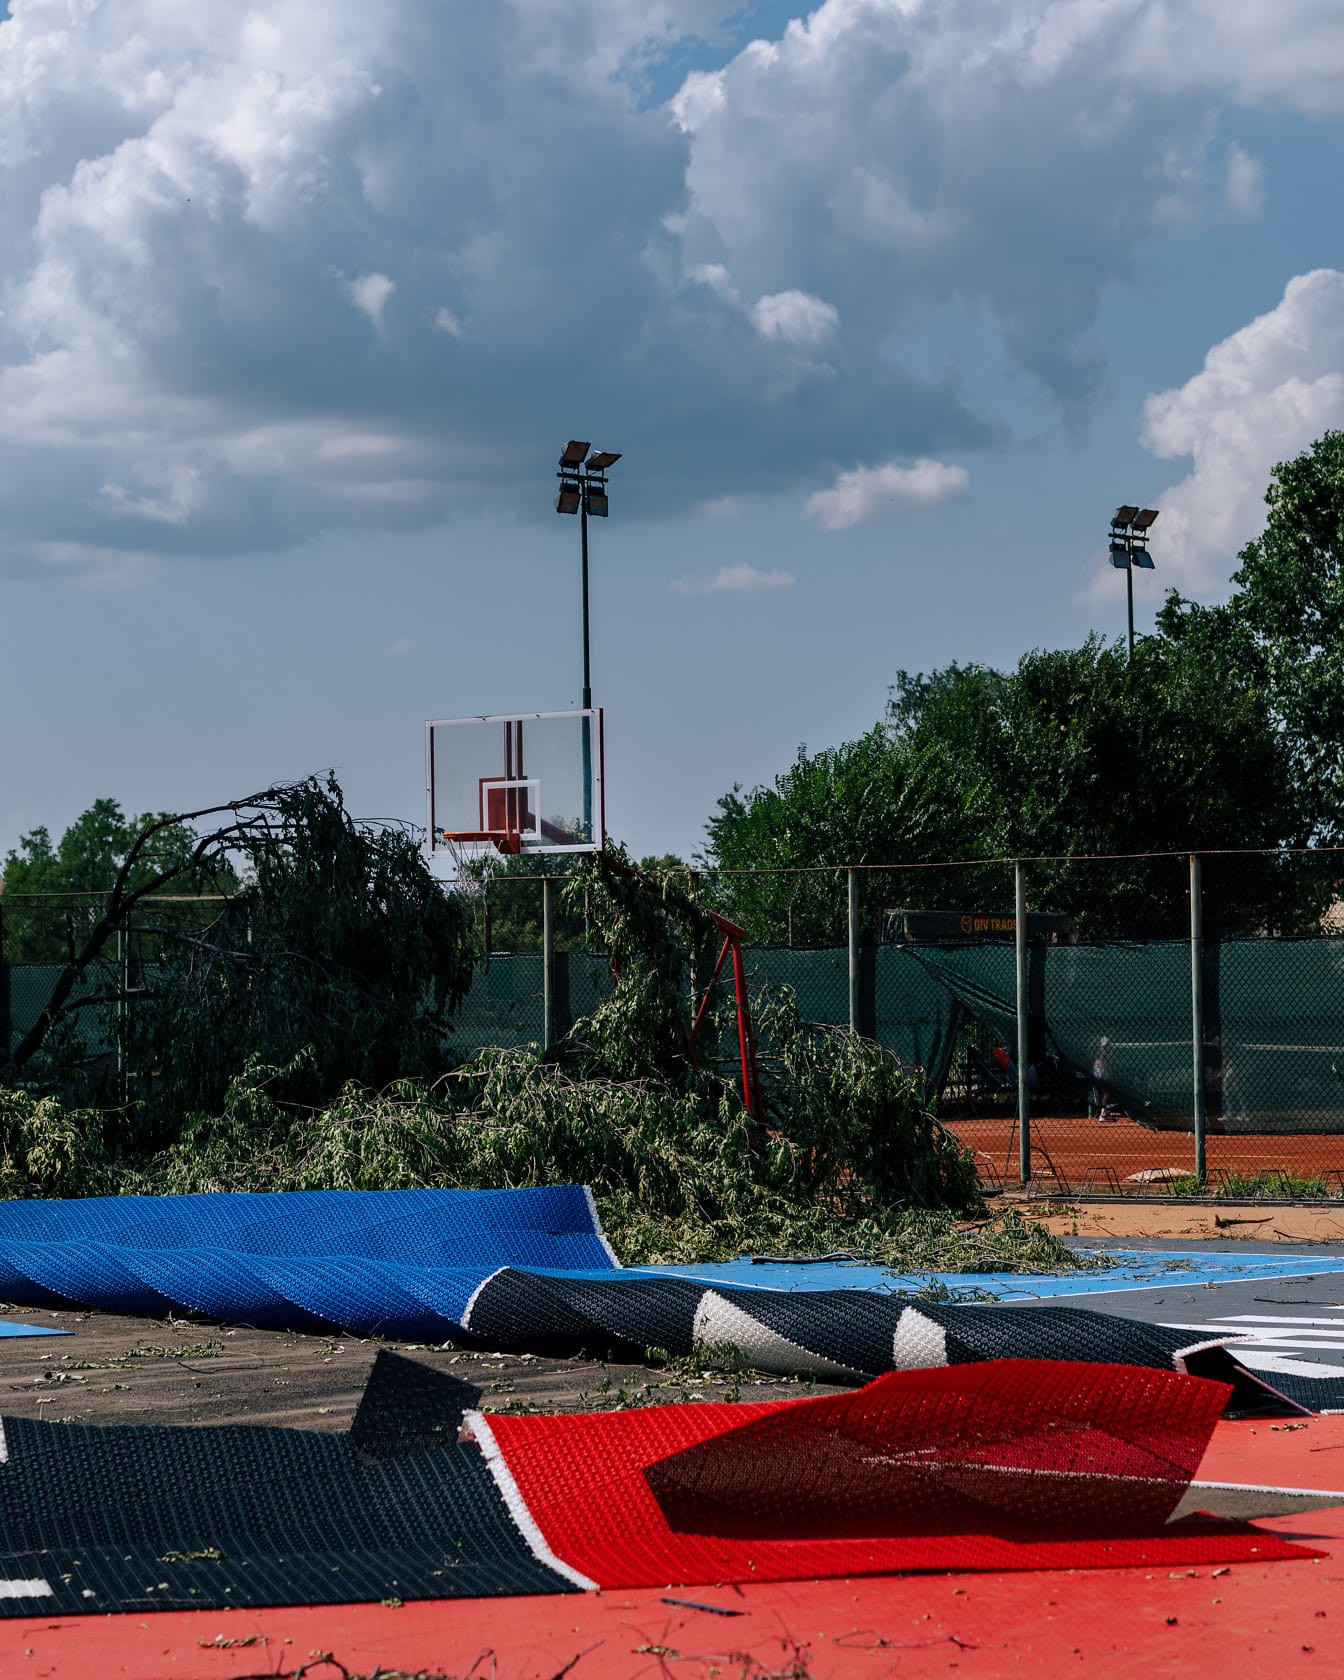 Los vientos huracanados dañan los árboles y la cancha de baloncesto